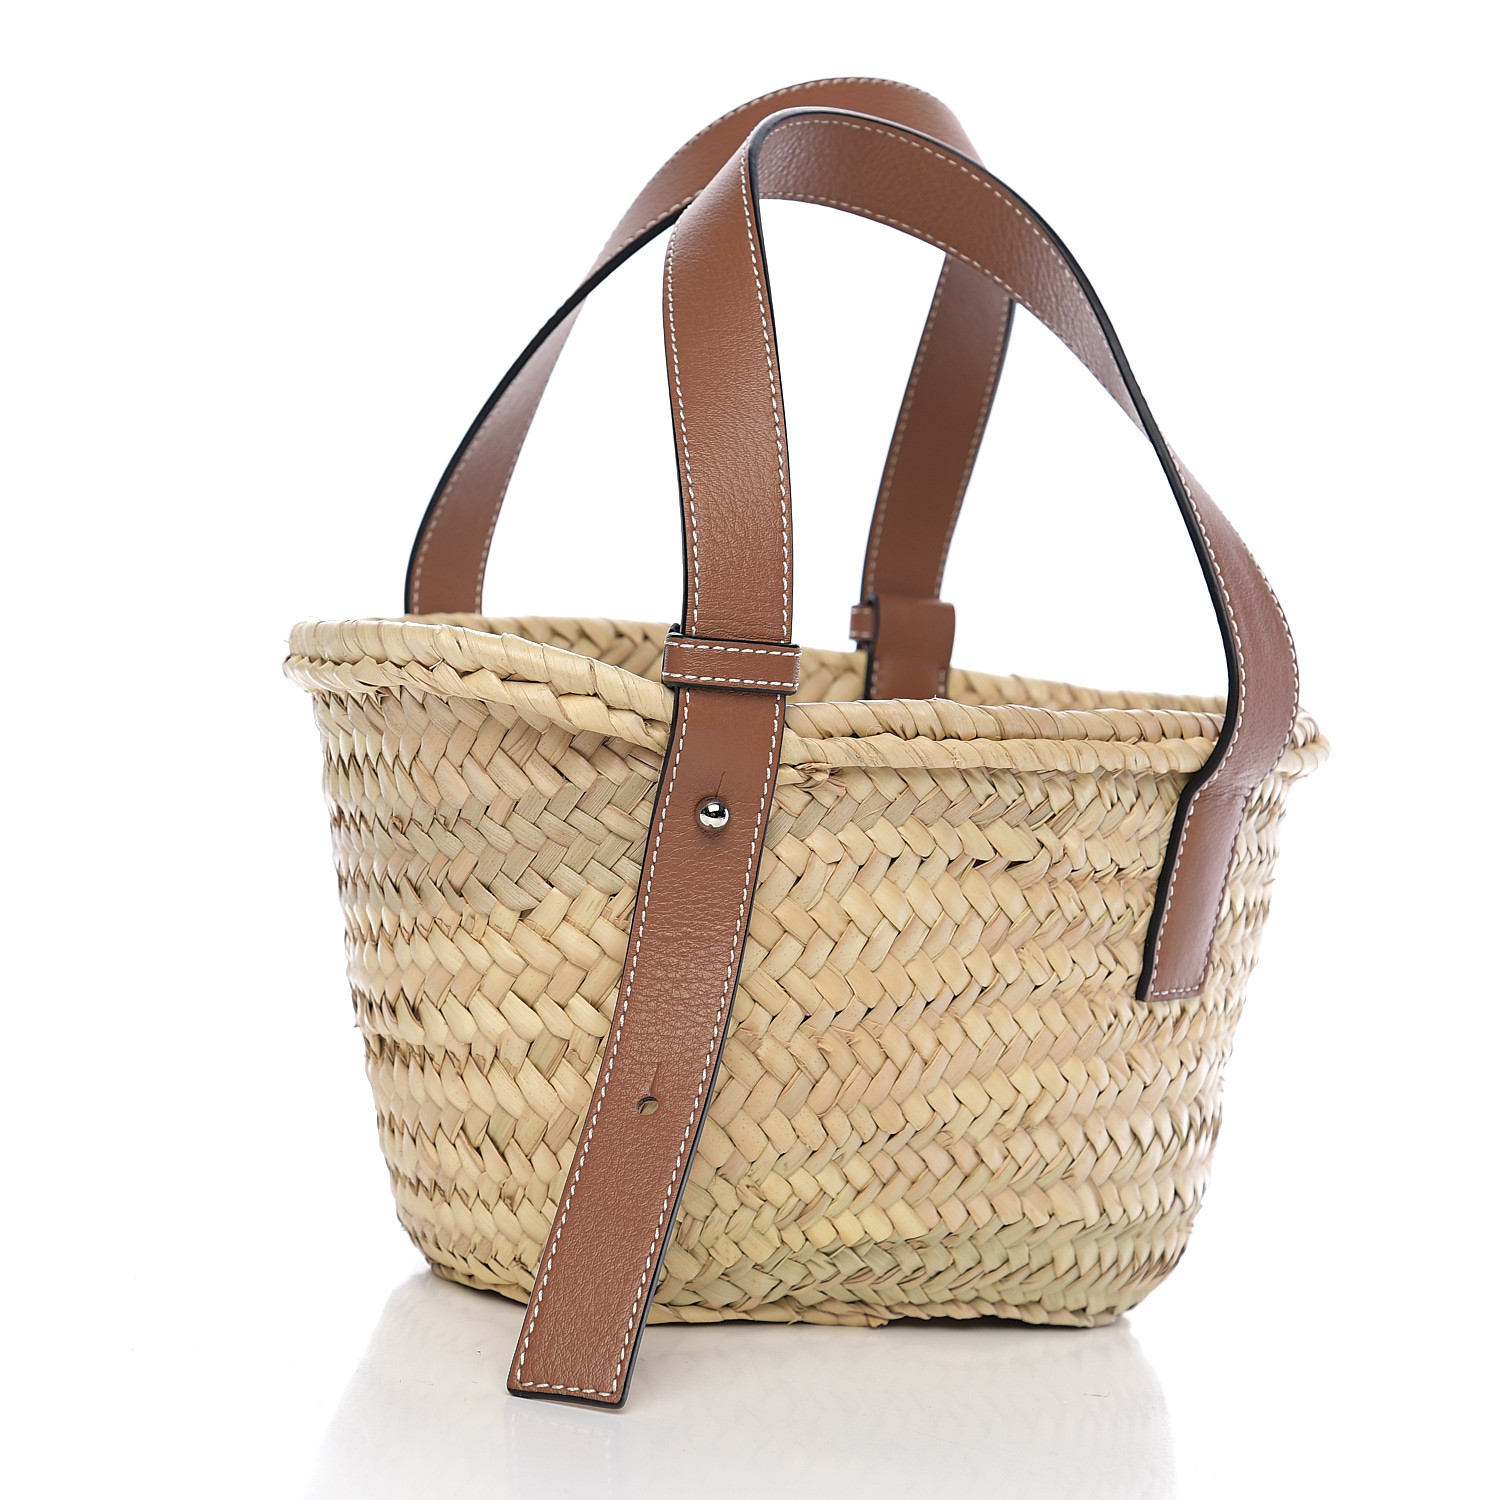 LOEWE Raffia Small Basket Tote Bag Natural Tan 556414